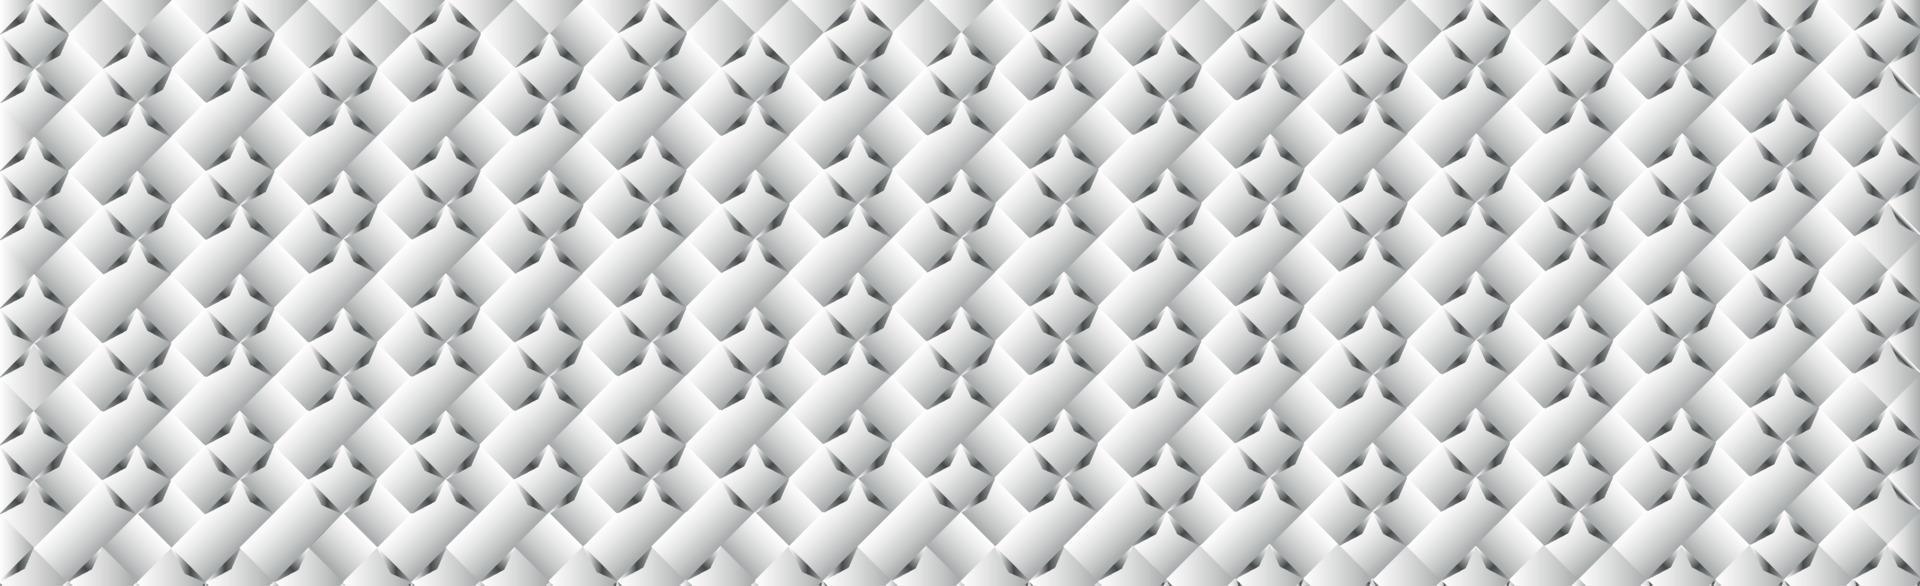 fundo abstrato cinza - retângulos volumétricos brancos - vetor